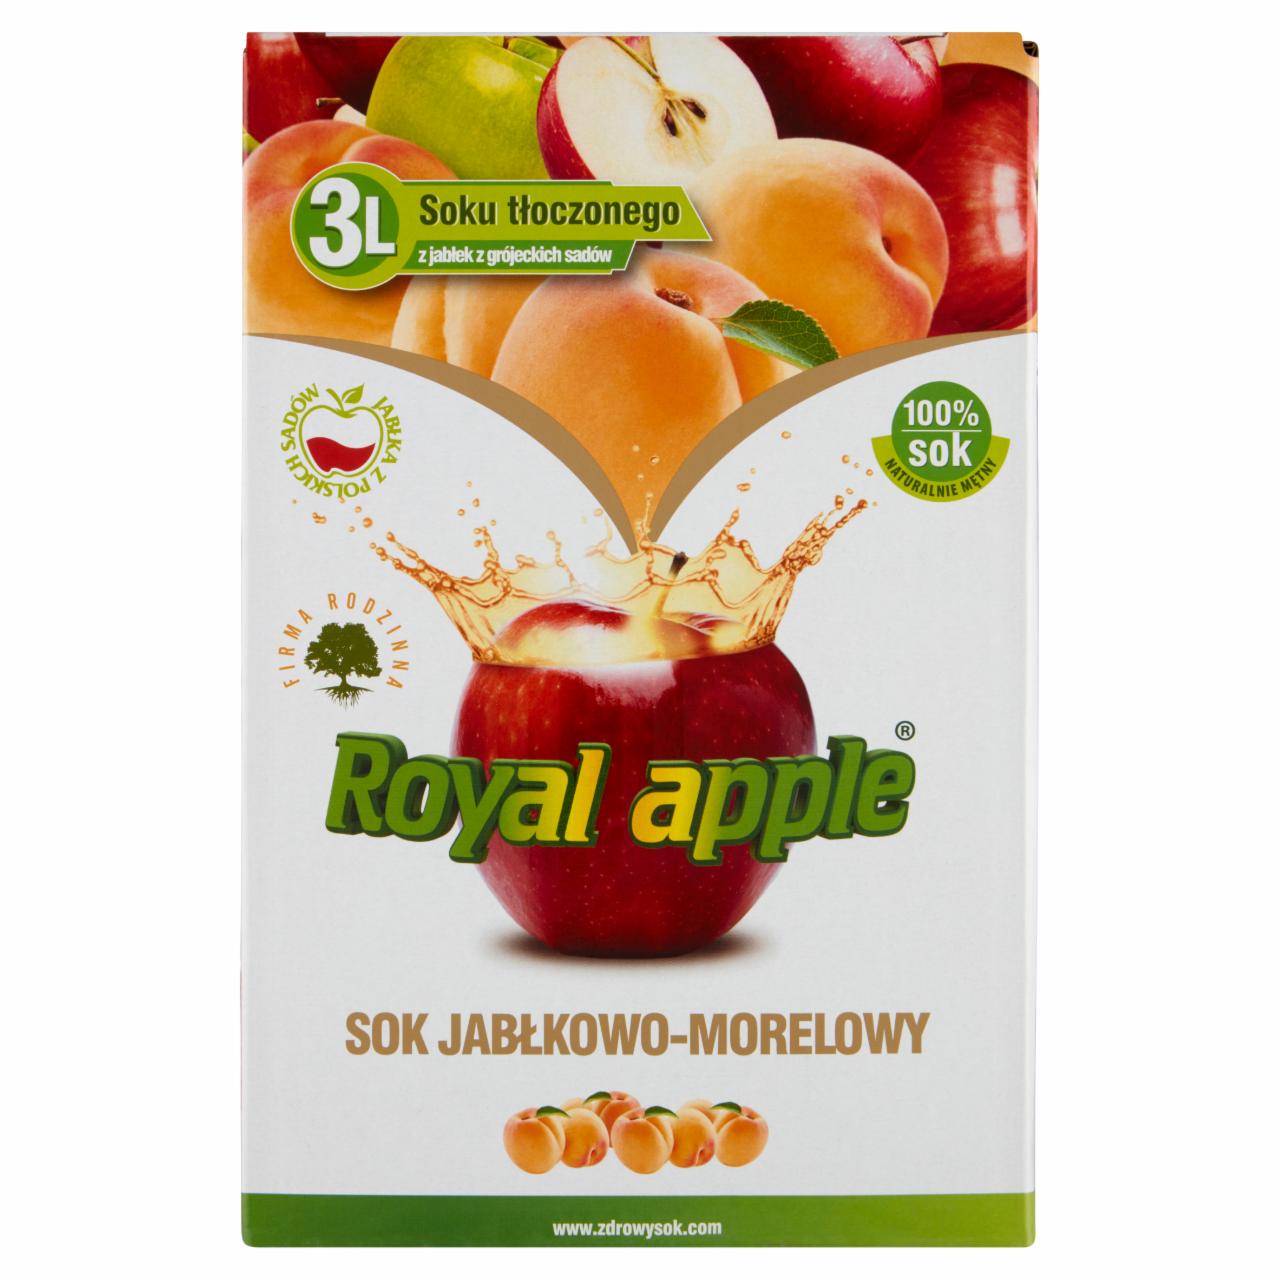 Zdjęcia - Royal apple Sok jabłkowo-morelowy 3 l